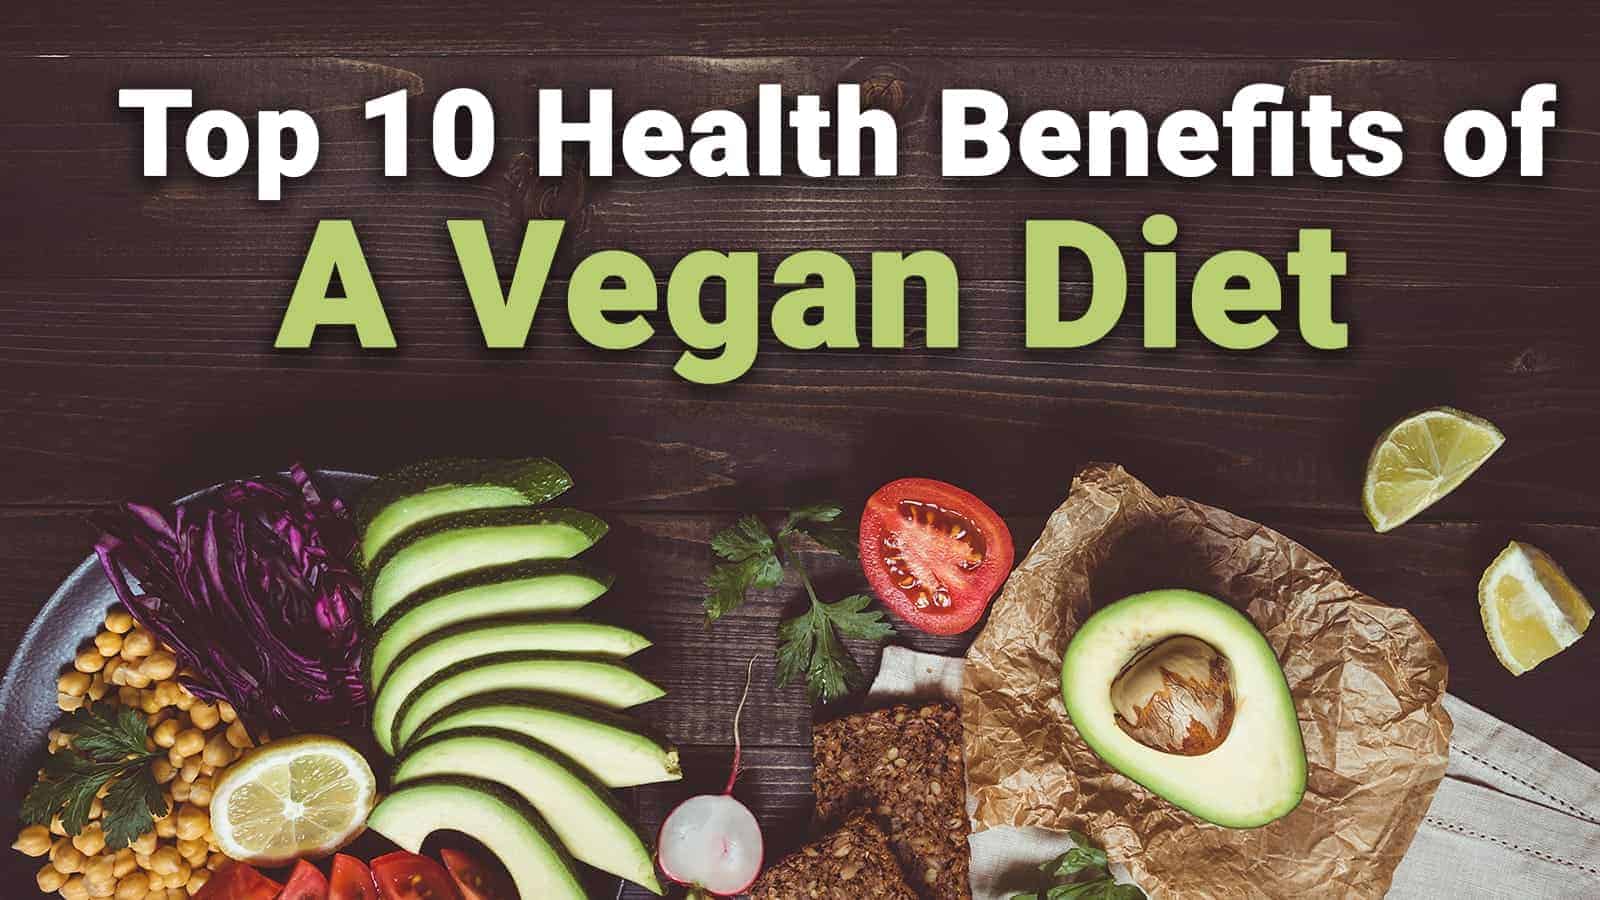 Top 10 Health Benefits of A Vegan Diet